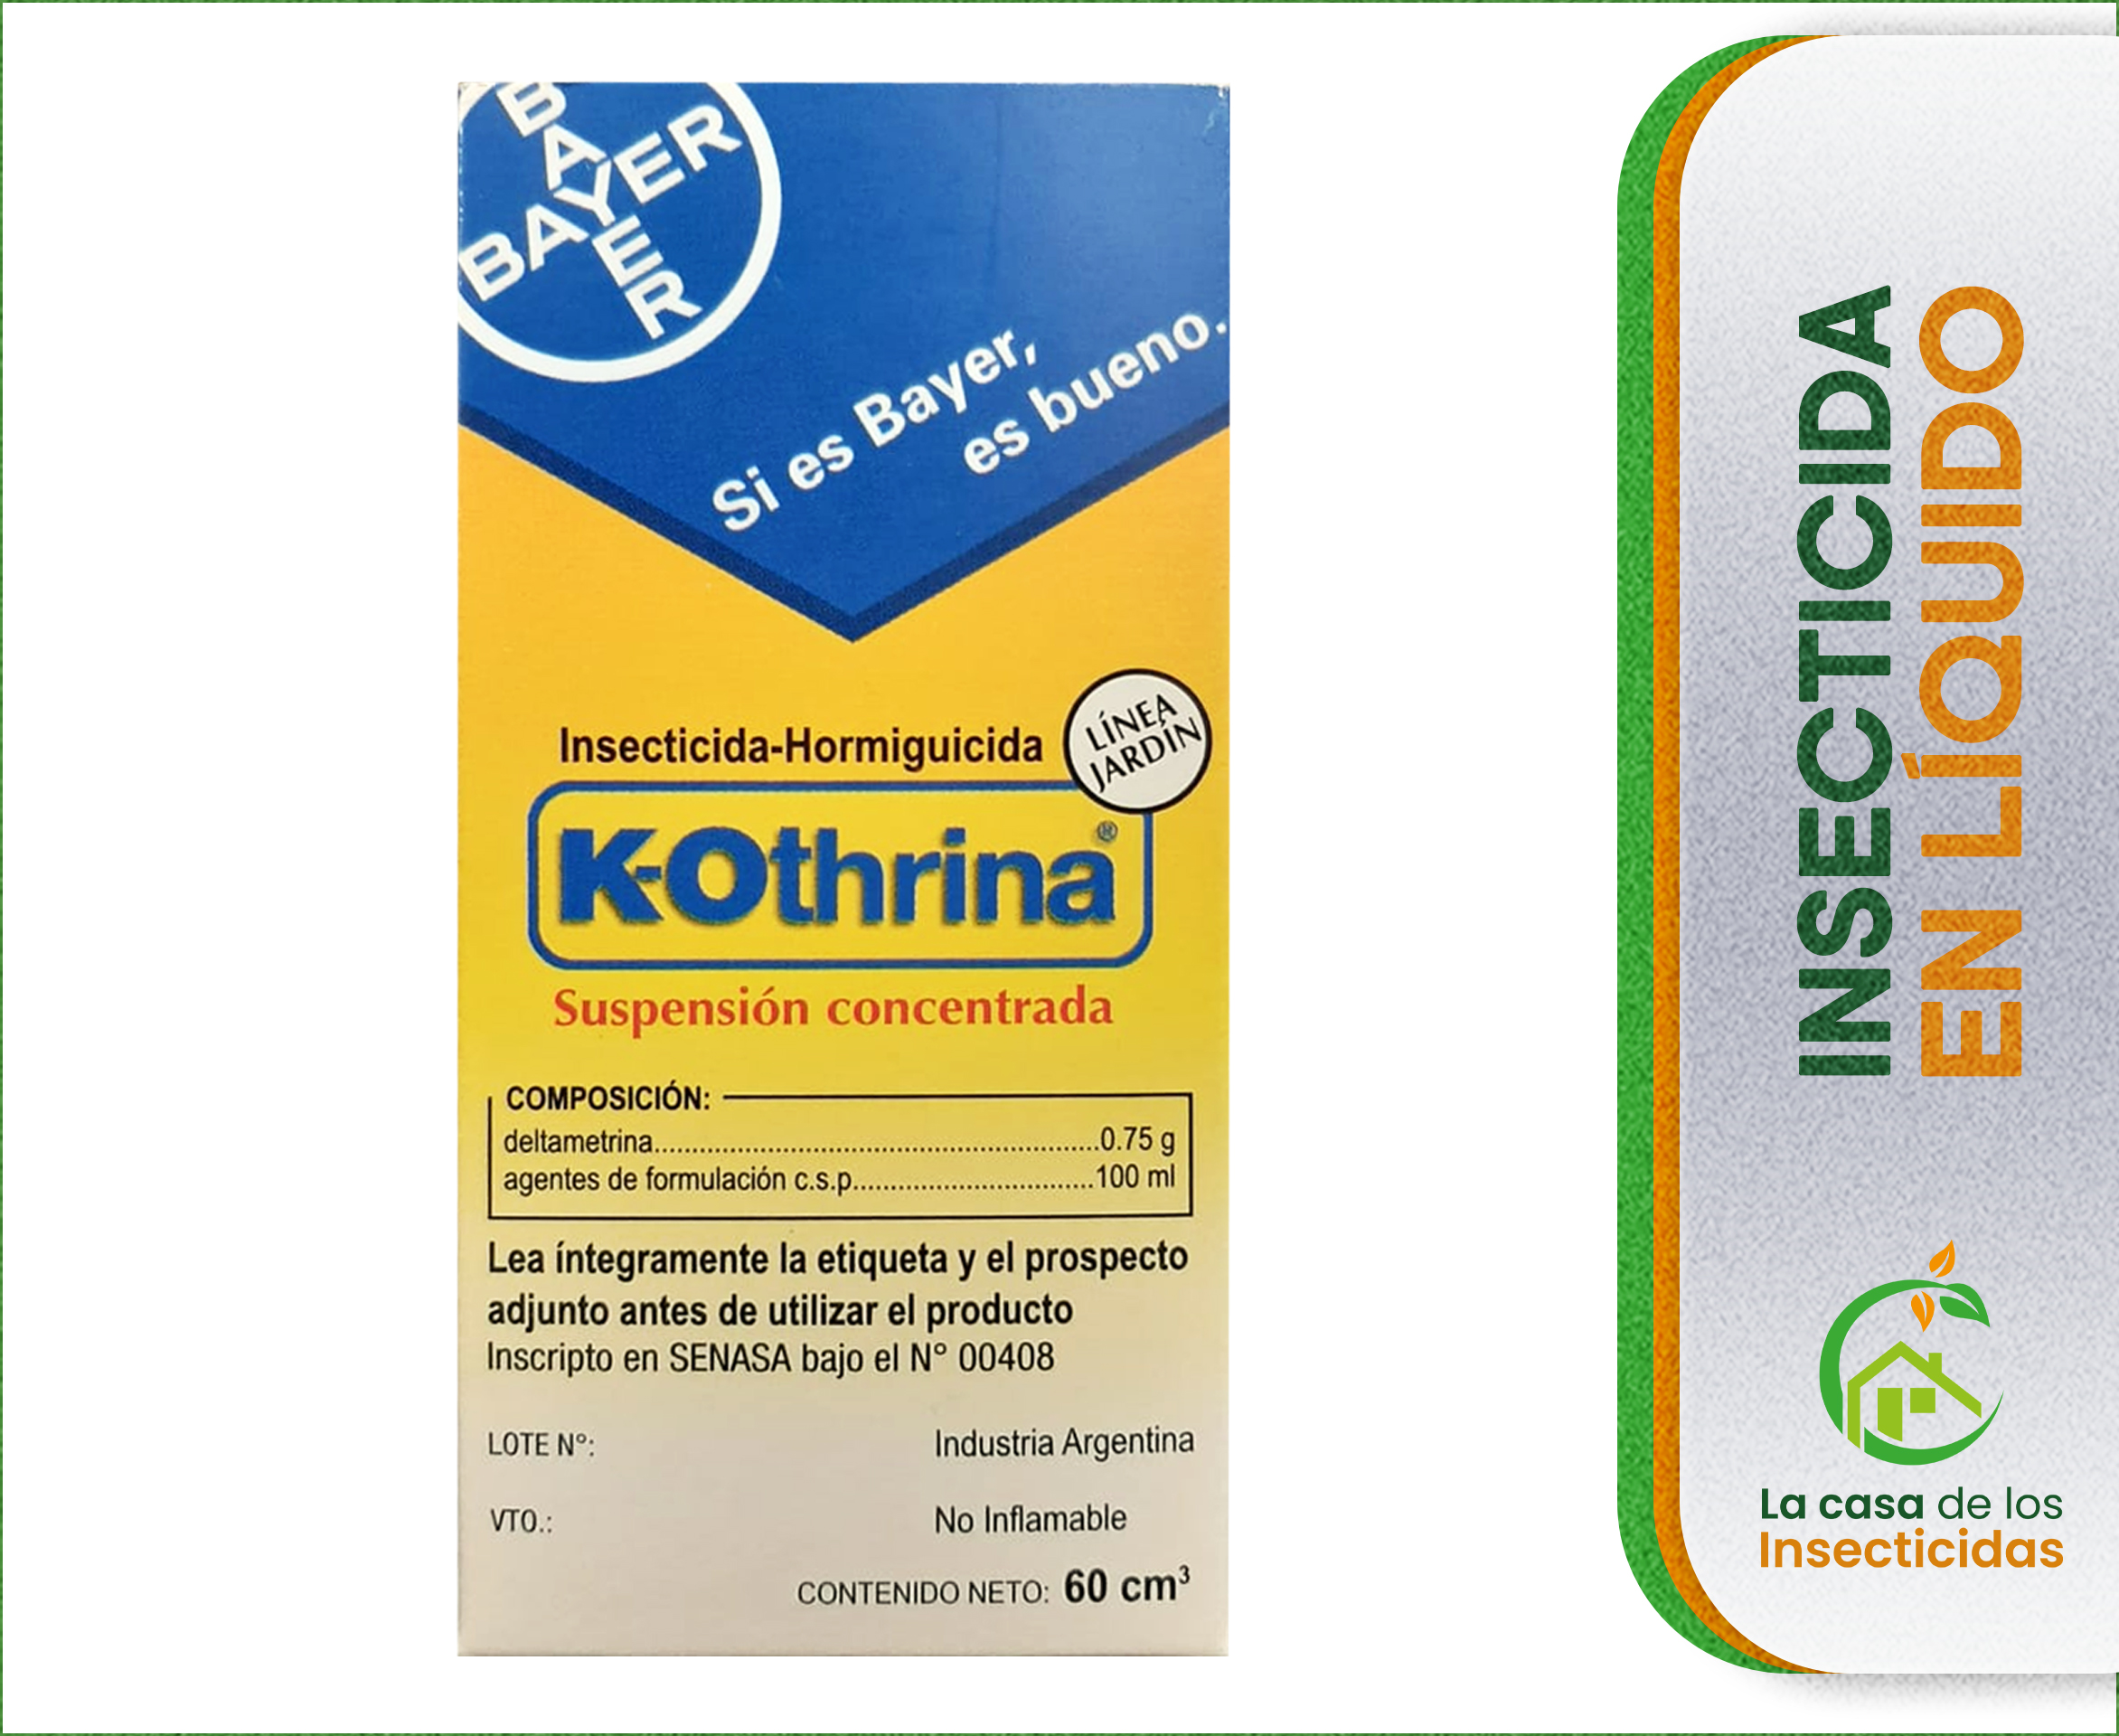 K-Othrina 60 cc. insecticida hormiguicida líquido control de hormigas